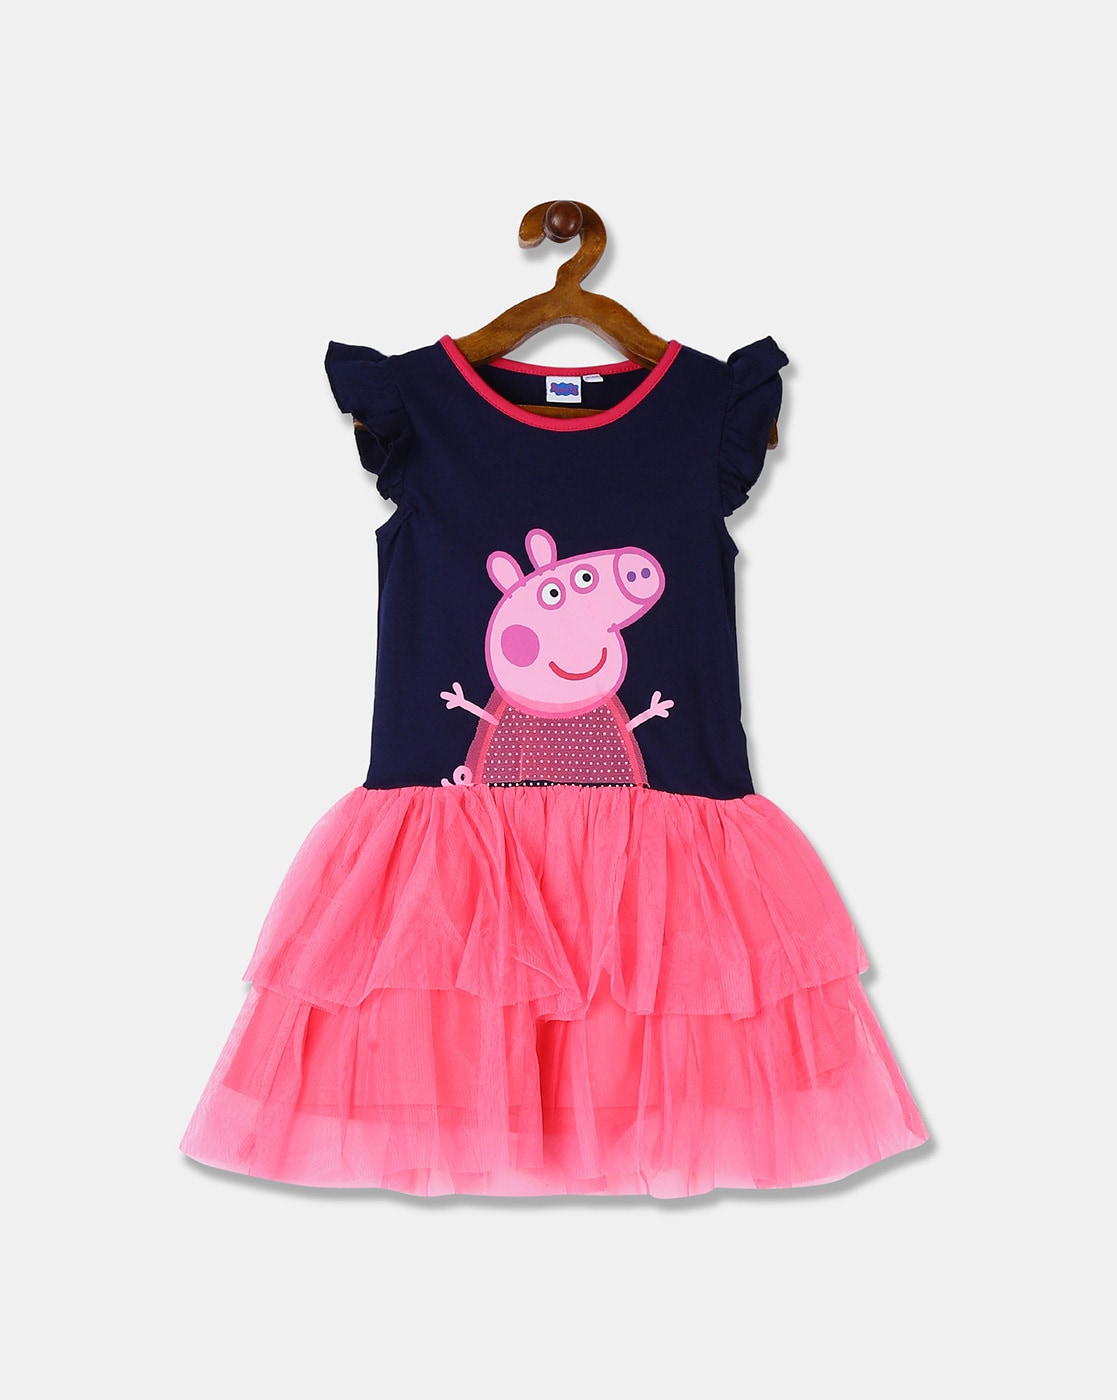 Buy PEPPA, Peppa Pig Costume, Peppa Pig Tutu, Pig Tutu Dress, Peppa Pig  Halloween, Peppa Pig Birthday Online in India - Etsy